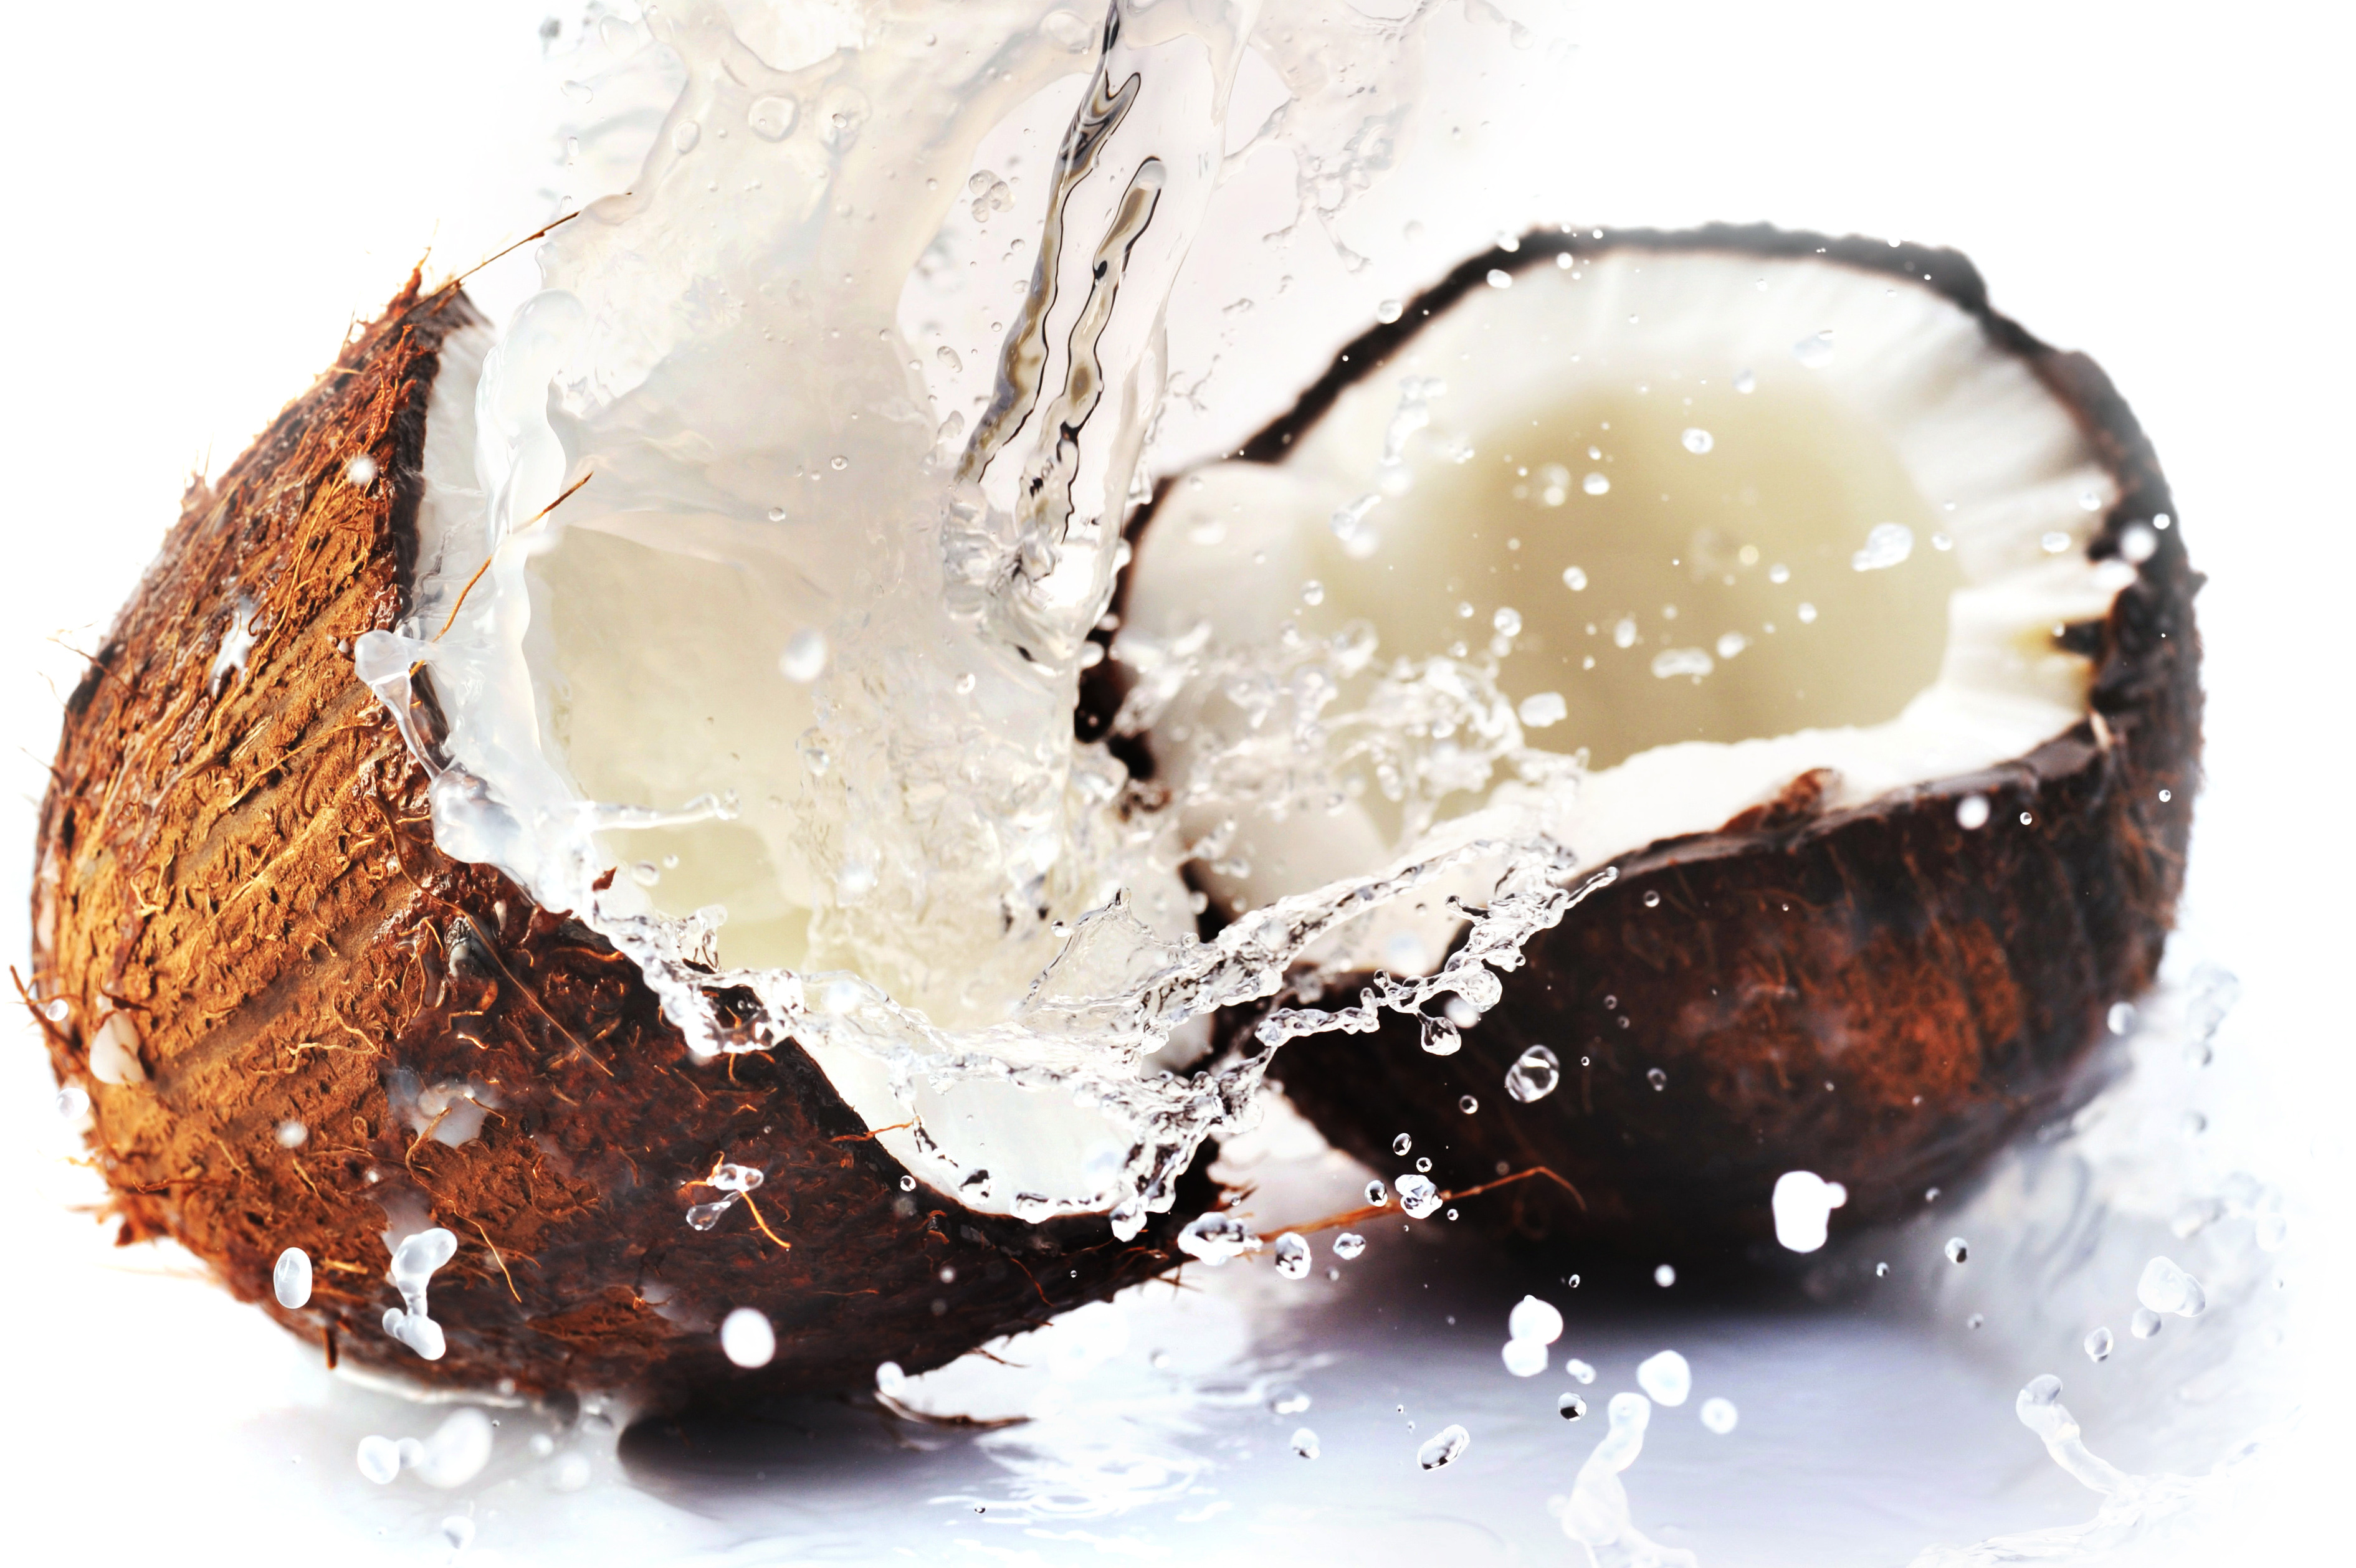 La noce di cocco, un frutto nutriente e buono dagli ambienti tropicali! -  INTER-MED